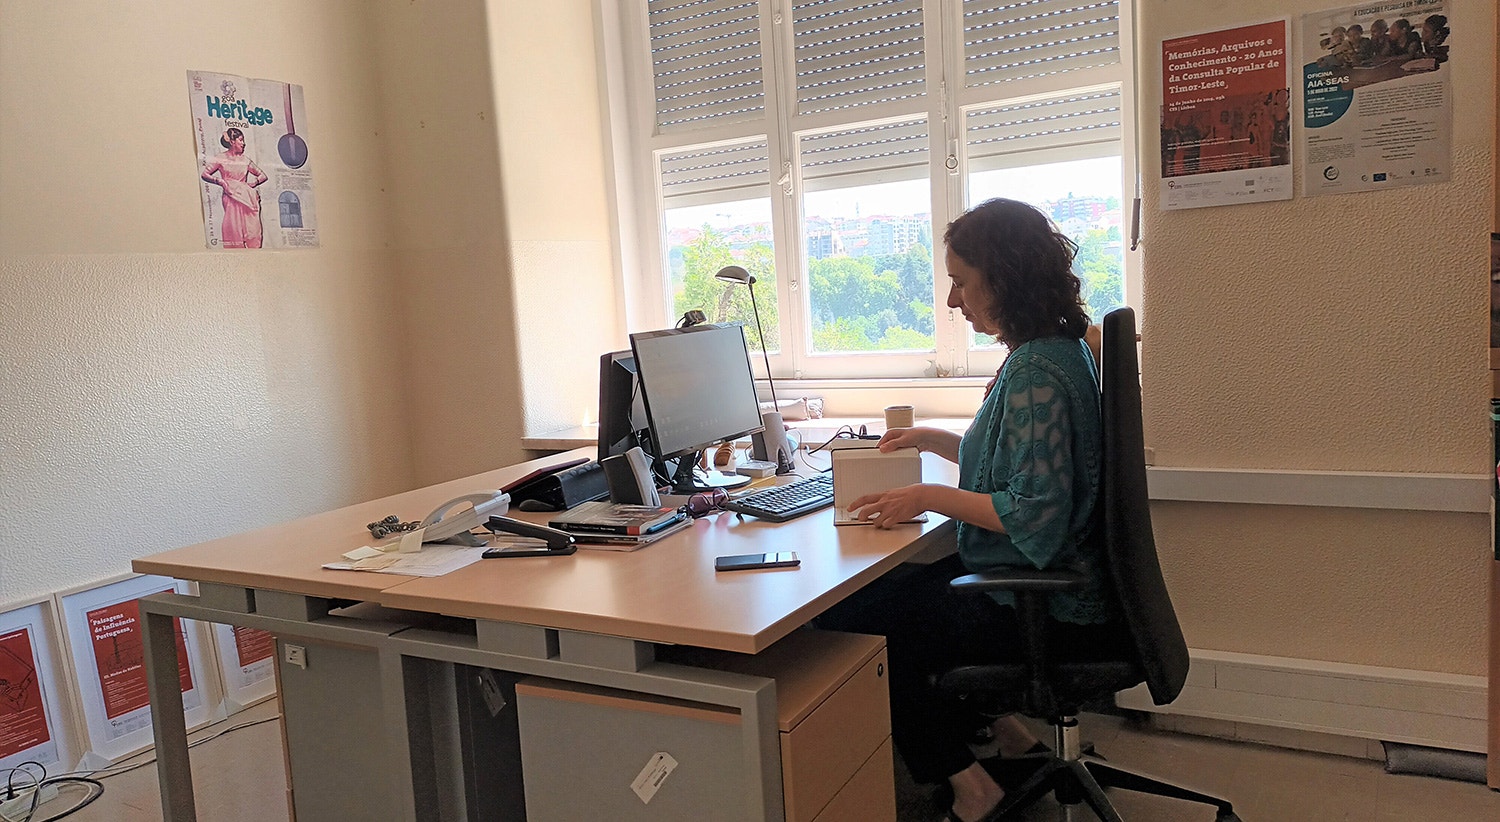  Marisa Ramos Gon&ccedil;alves &eacute; investigadora do Centro de Estudos Sociais da Universidade de Coimbra desde 2016. 